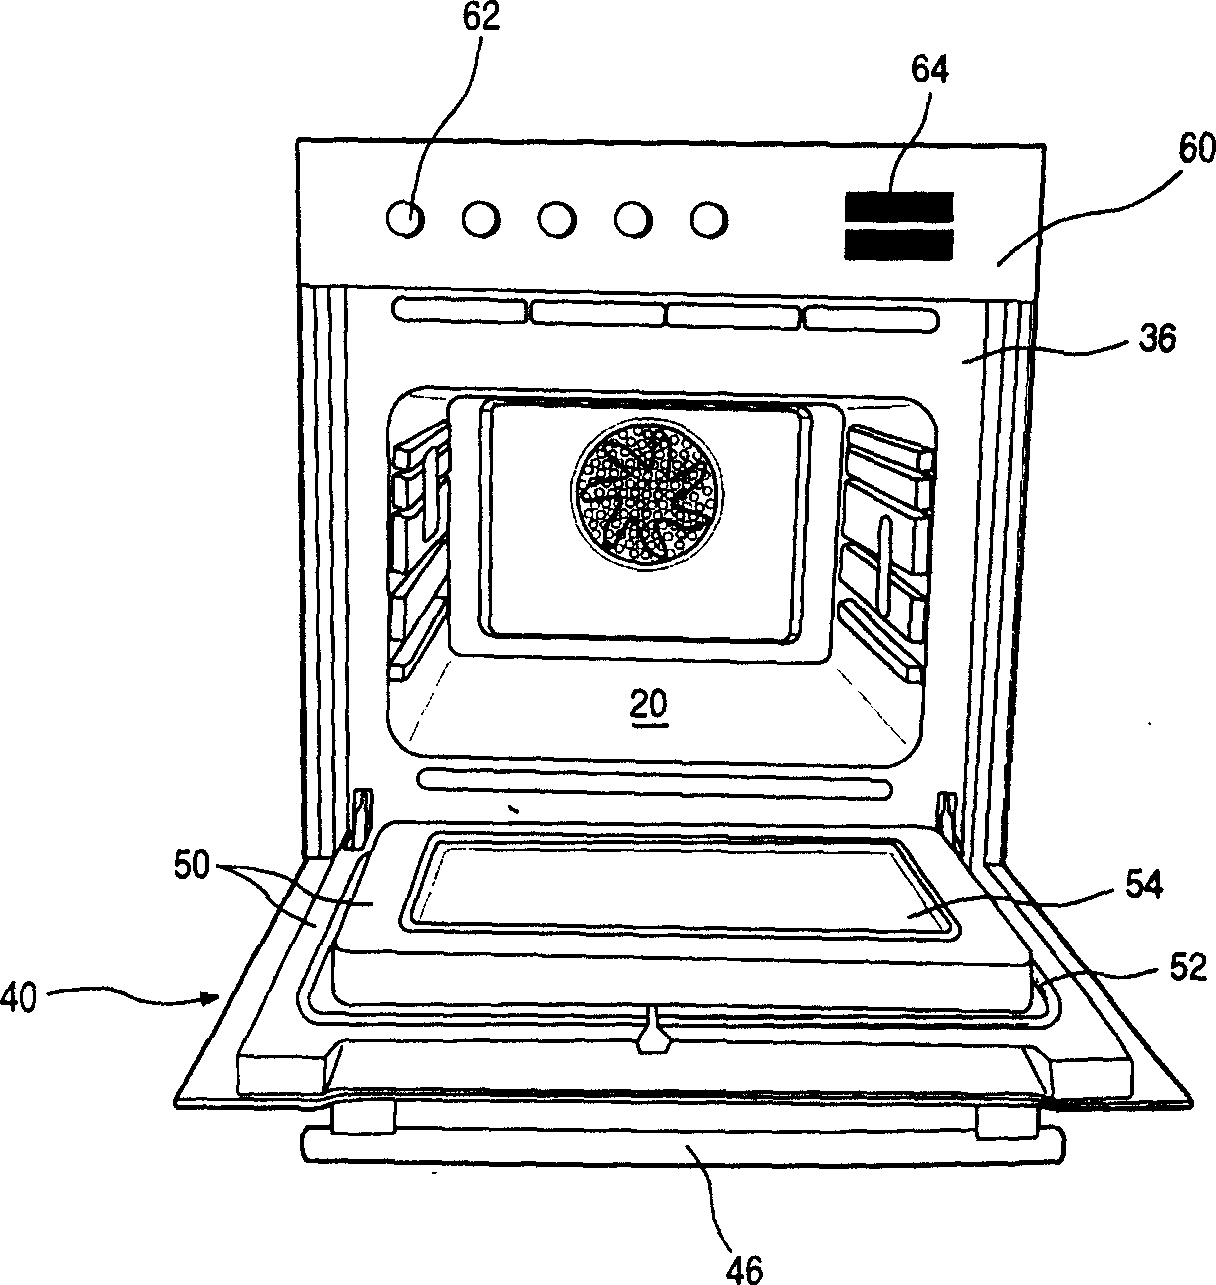 Full-glass oven door